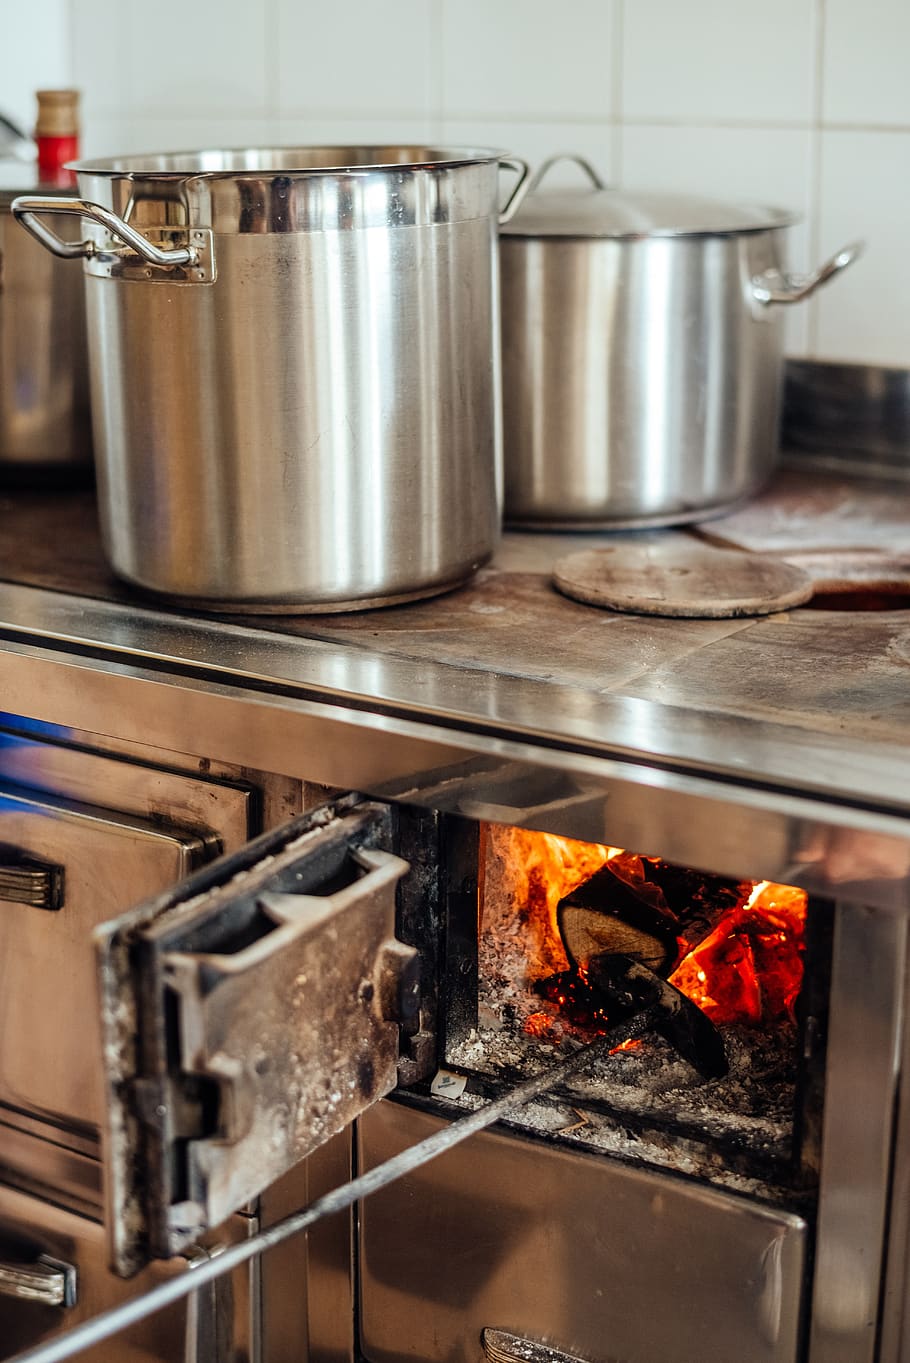 api kayu, memasak, panci, kompor, tua, oven, kompor pembakaran kayu, perapian, alat, suhu panas